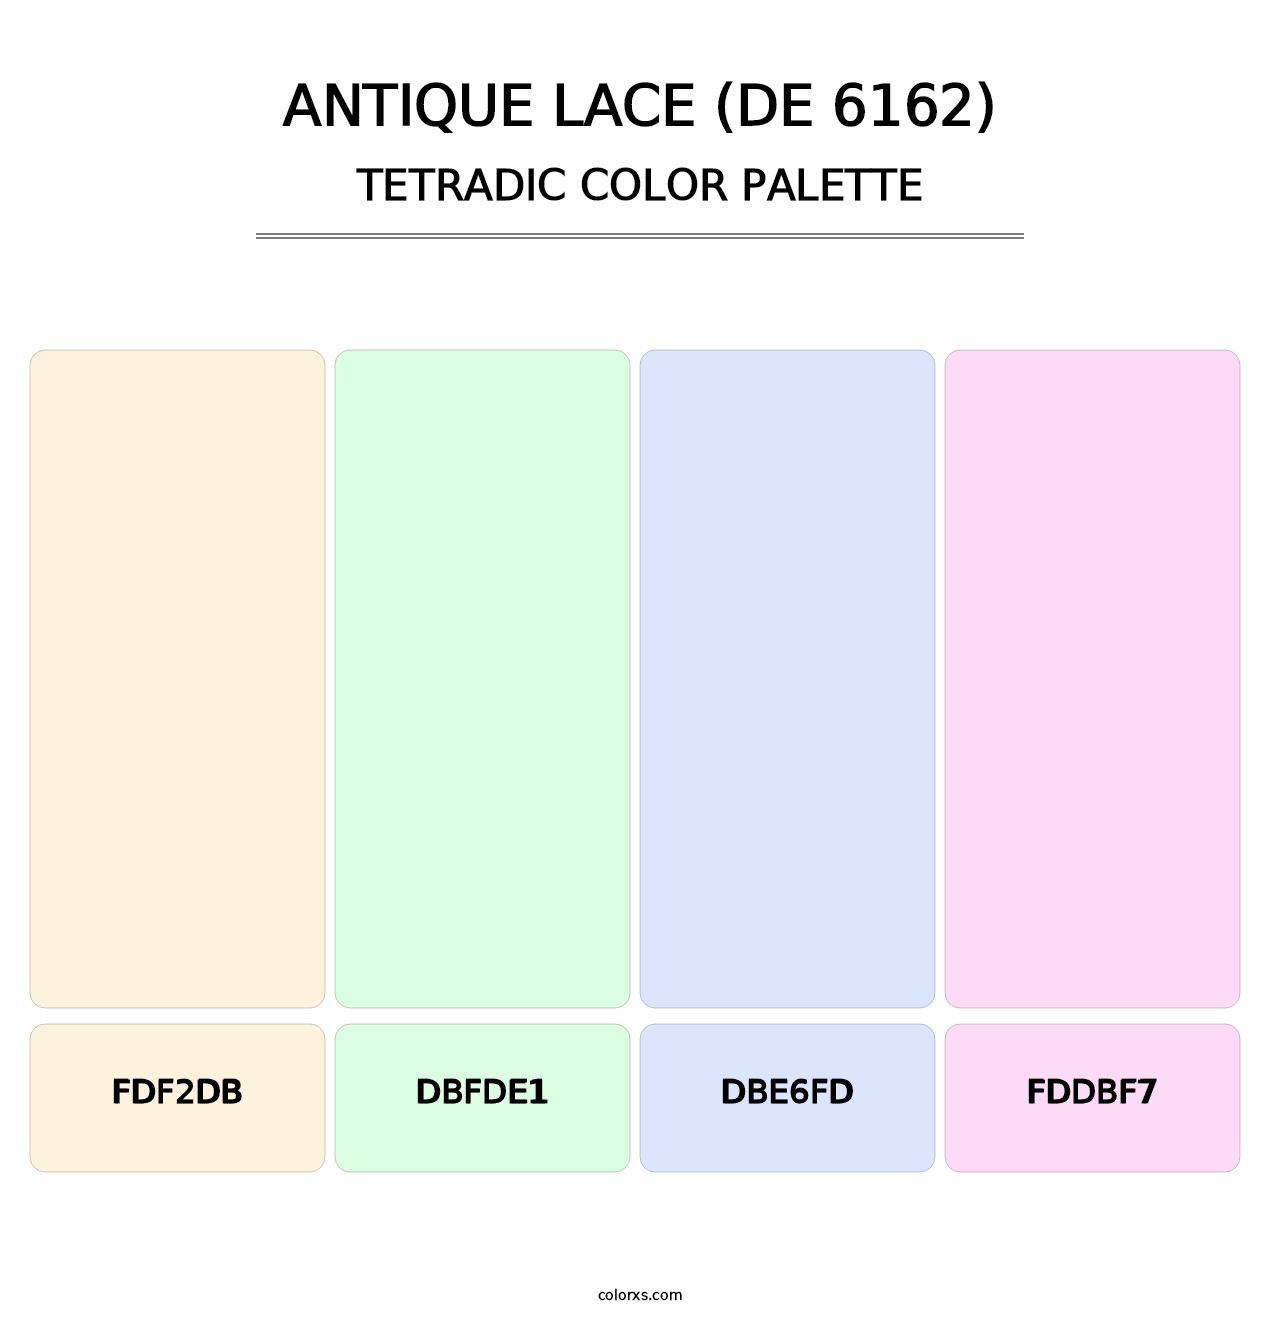 Antique Lace (DE 6162) - Tetradic Color Palette